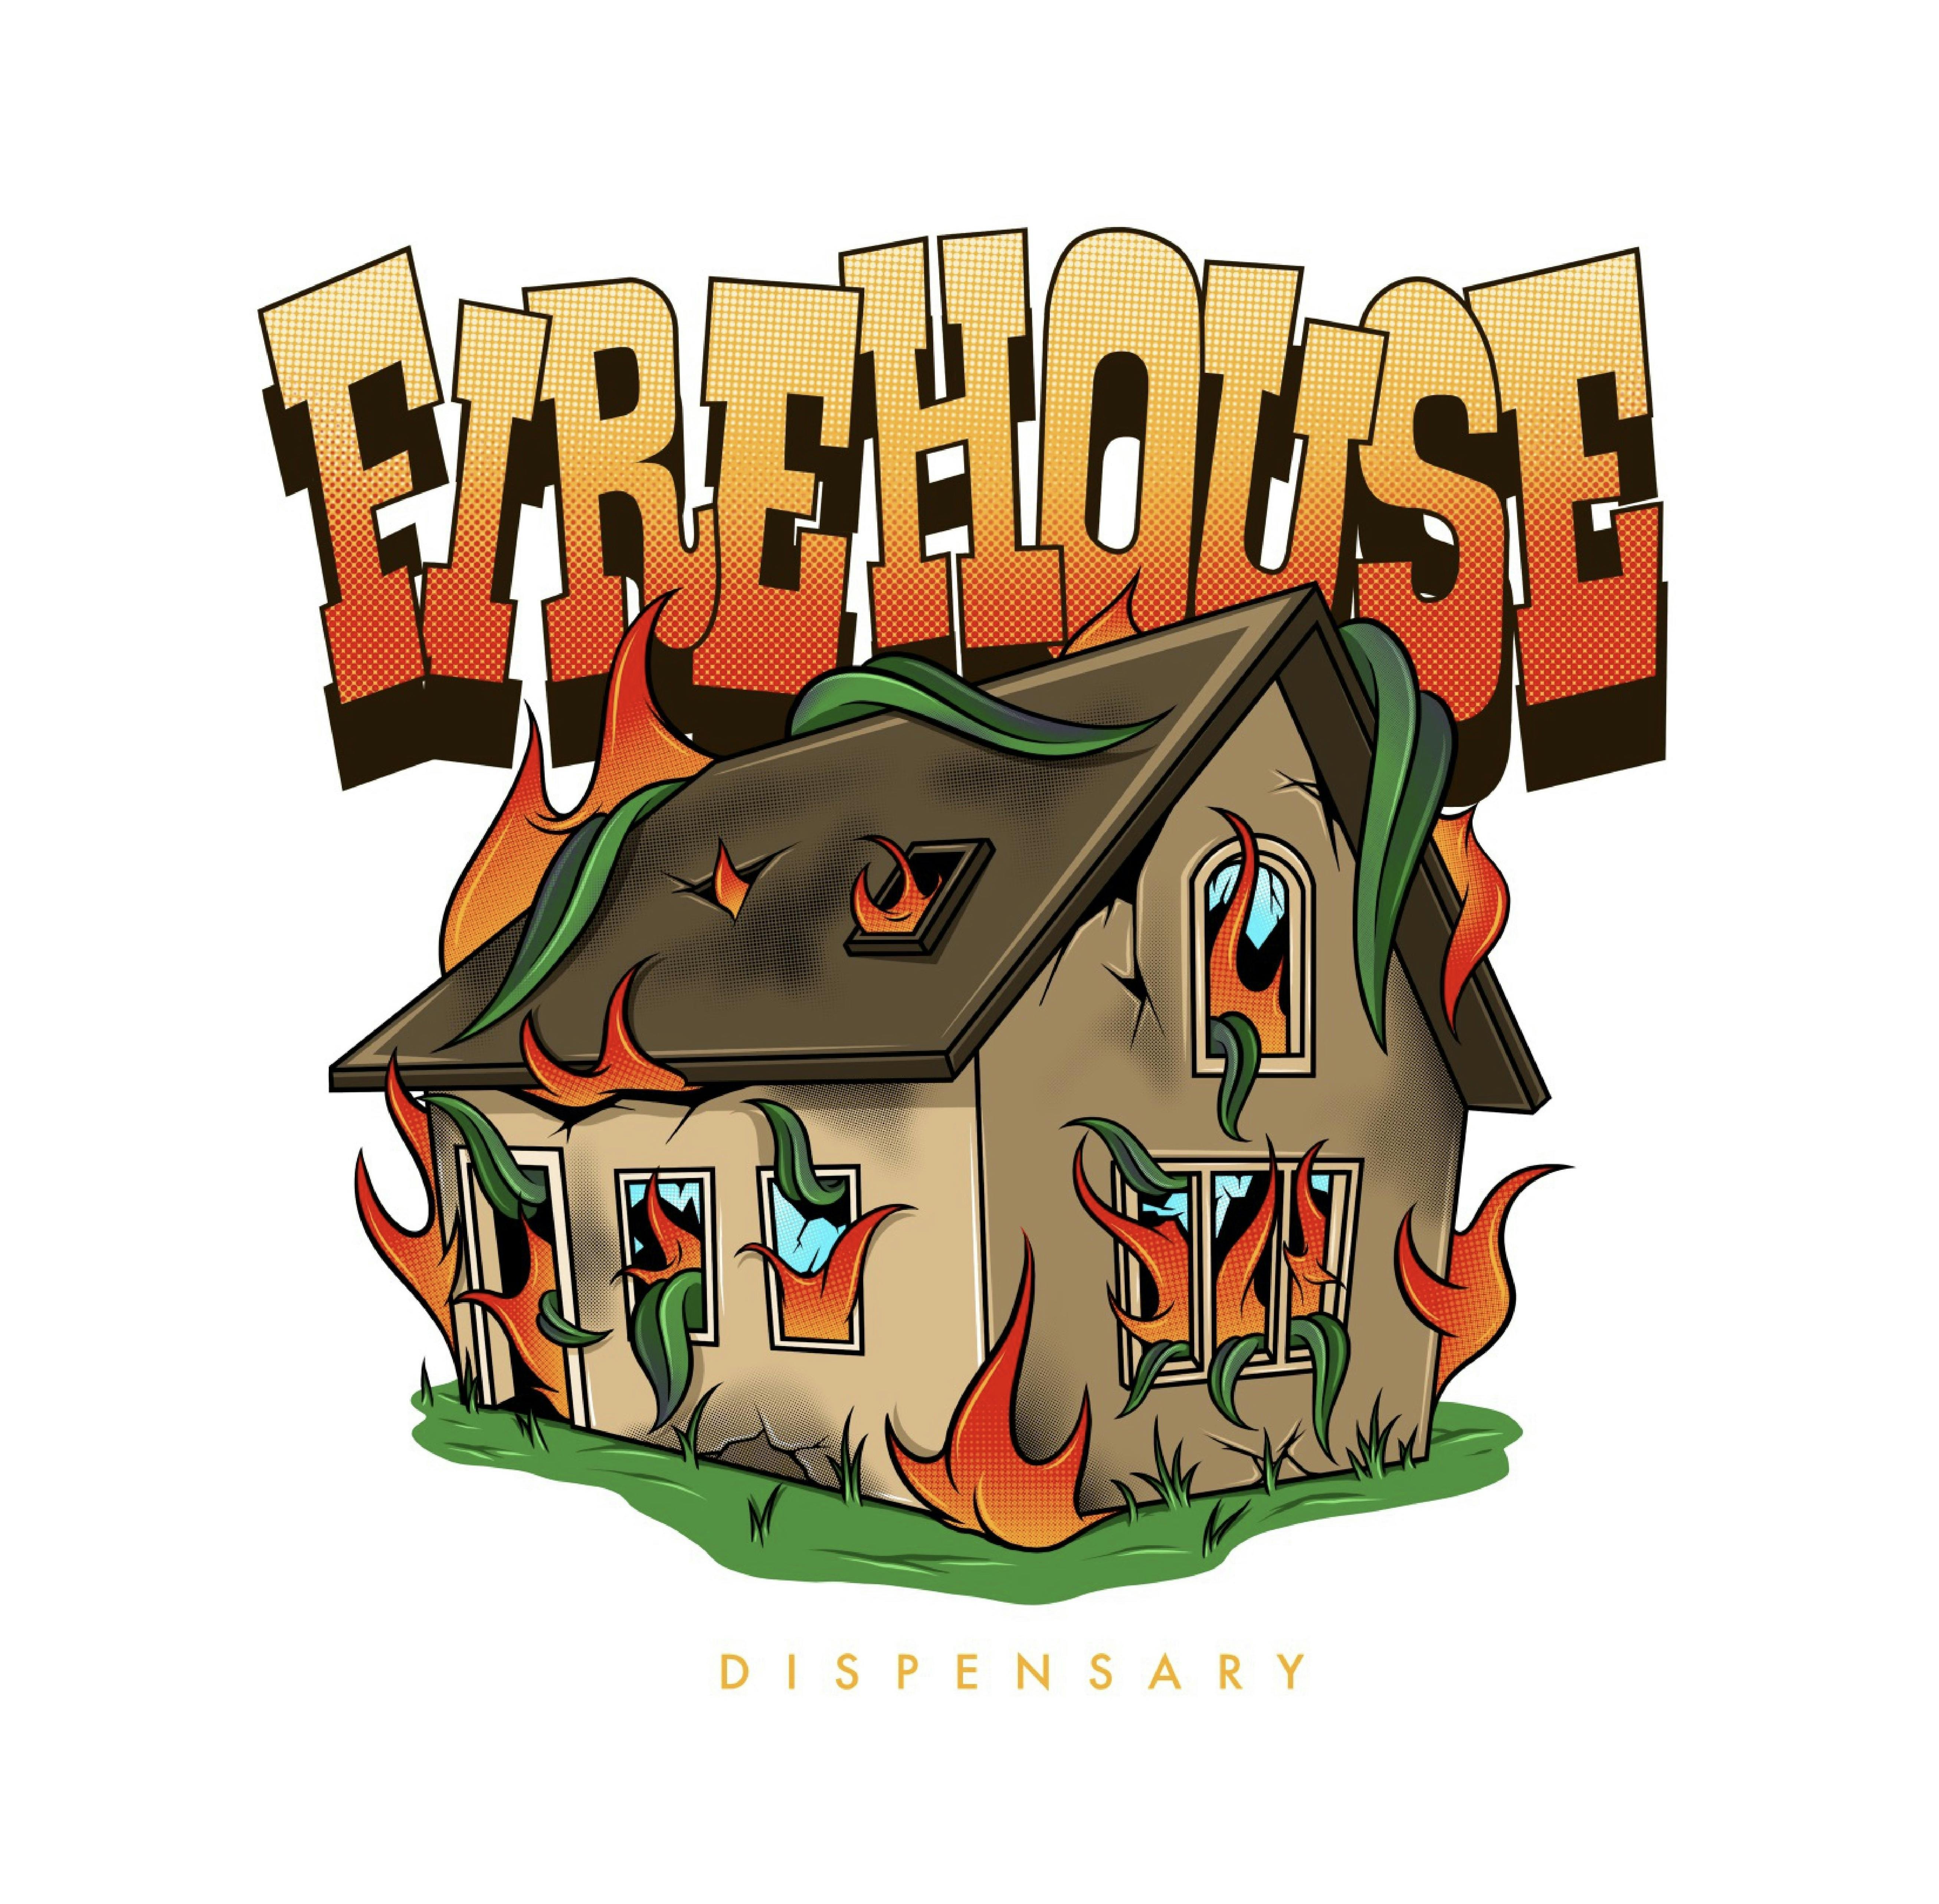 Firehouse Cannabis Dispensary